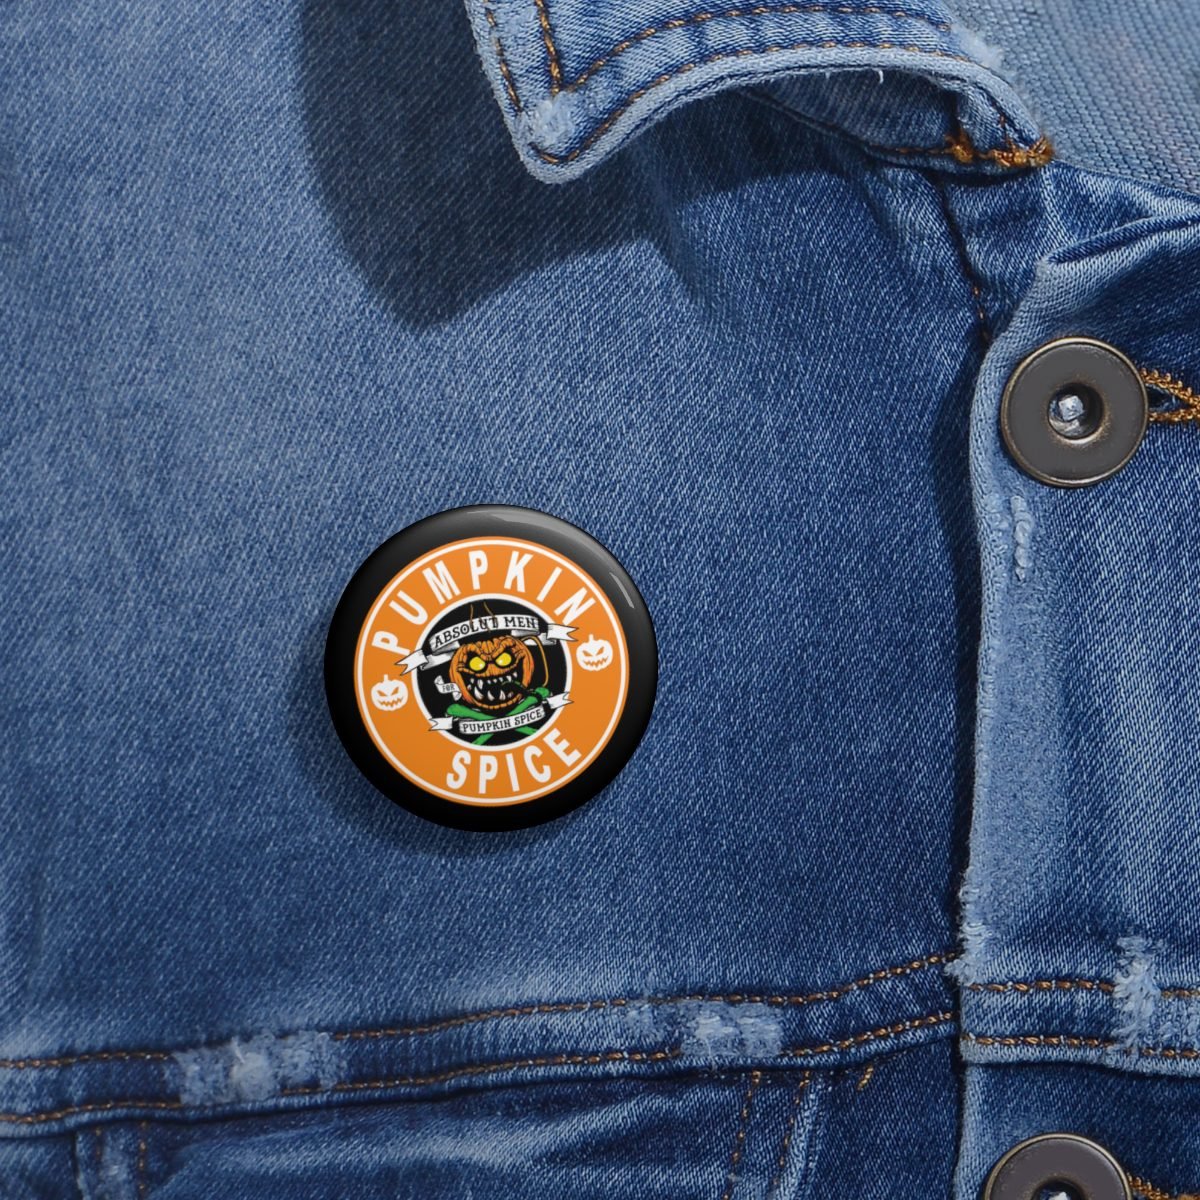 AMPS – Pumpkin Spice Logo Pin Buttons